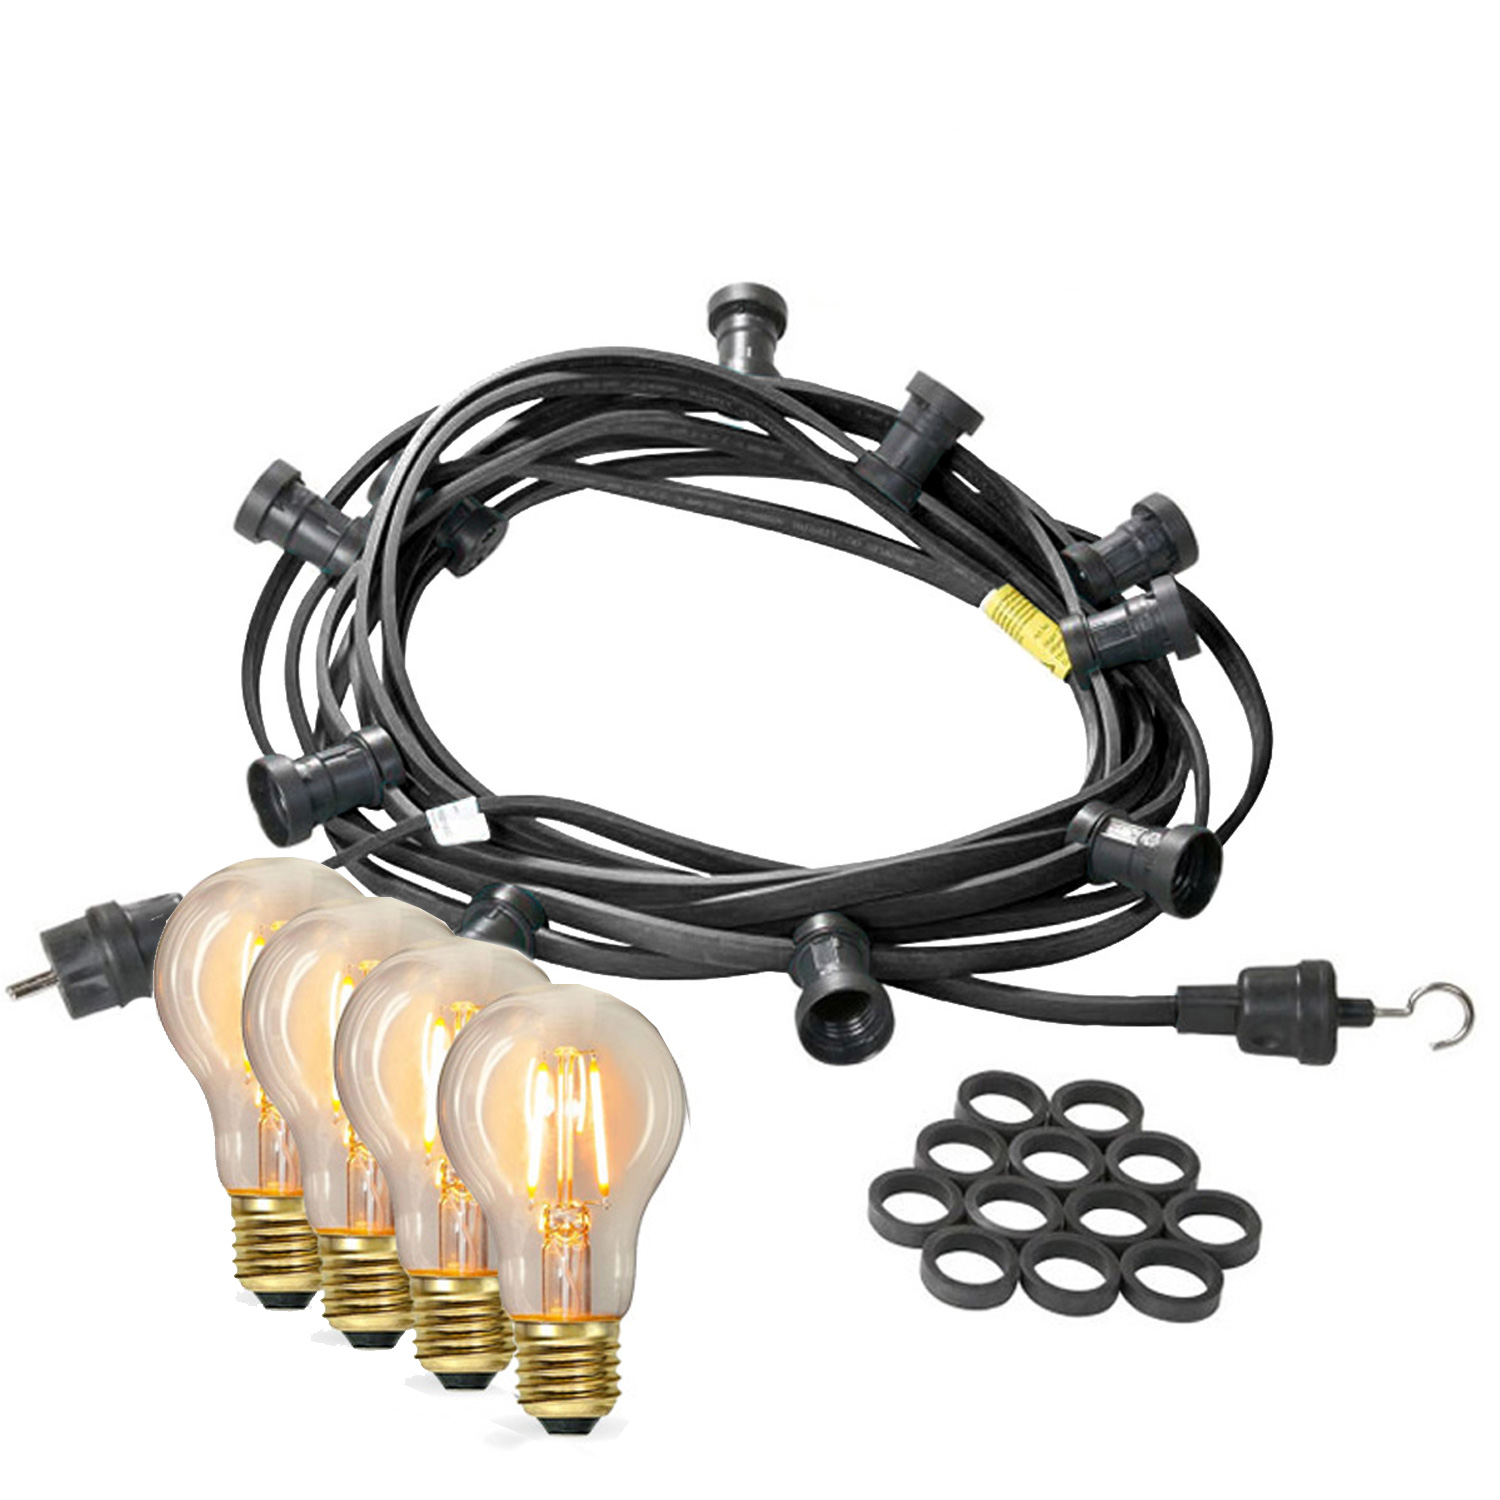 Illu-/Partylichterkette 30m - Außenlichterkette - Made in Germany - 50 x Edison LED Filamentlampen